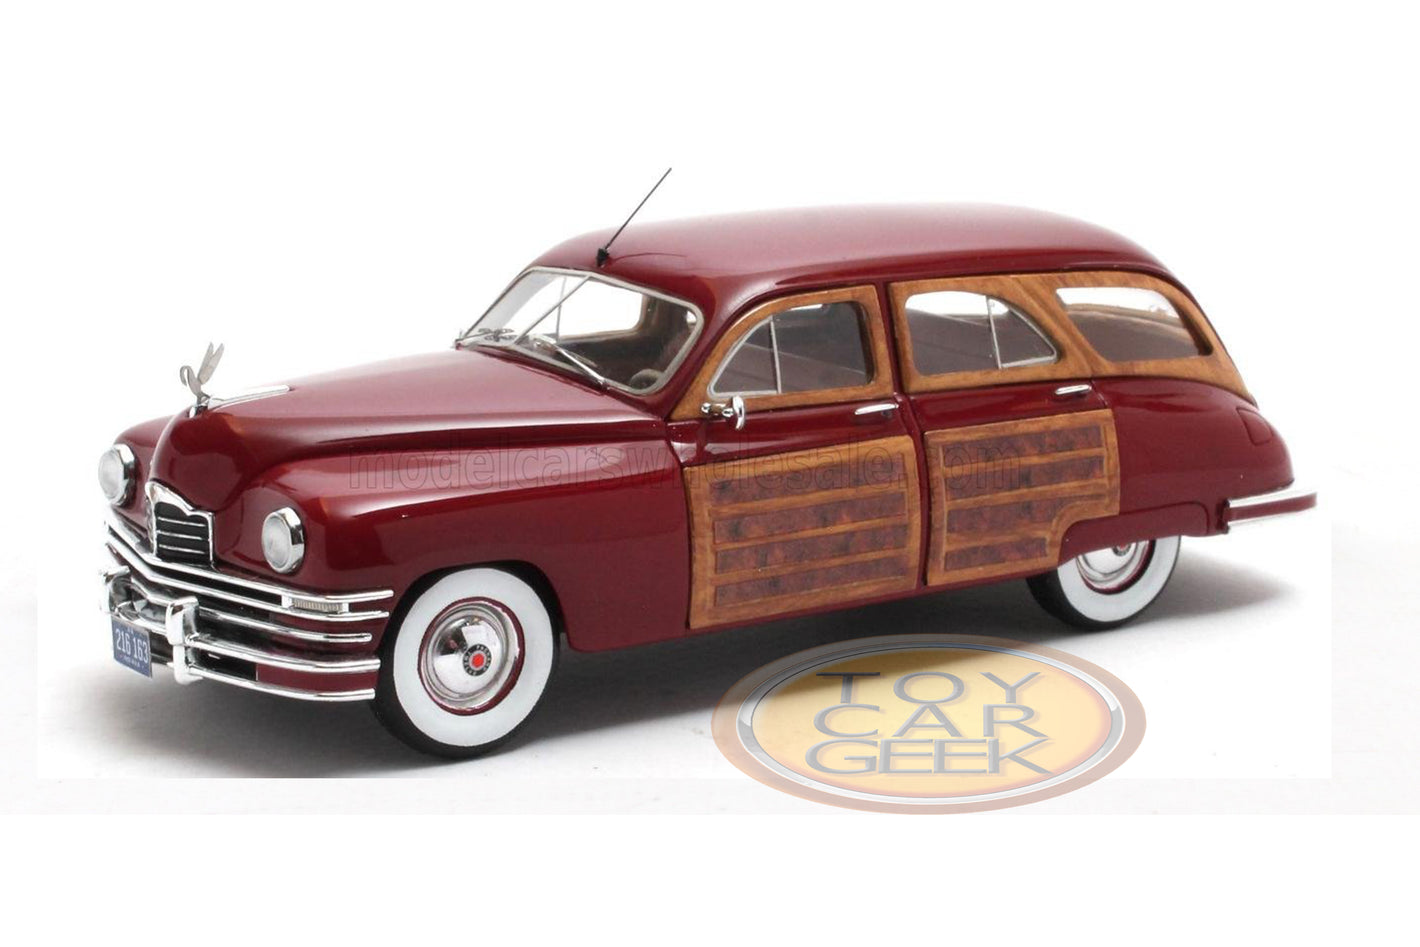 1948 Packard Eight Station Sedan - Red/Wood (Pre-Order)